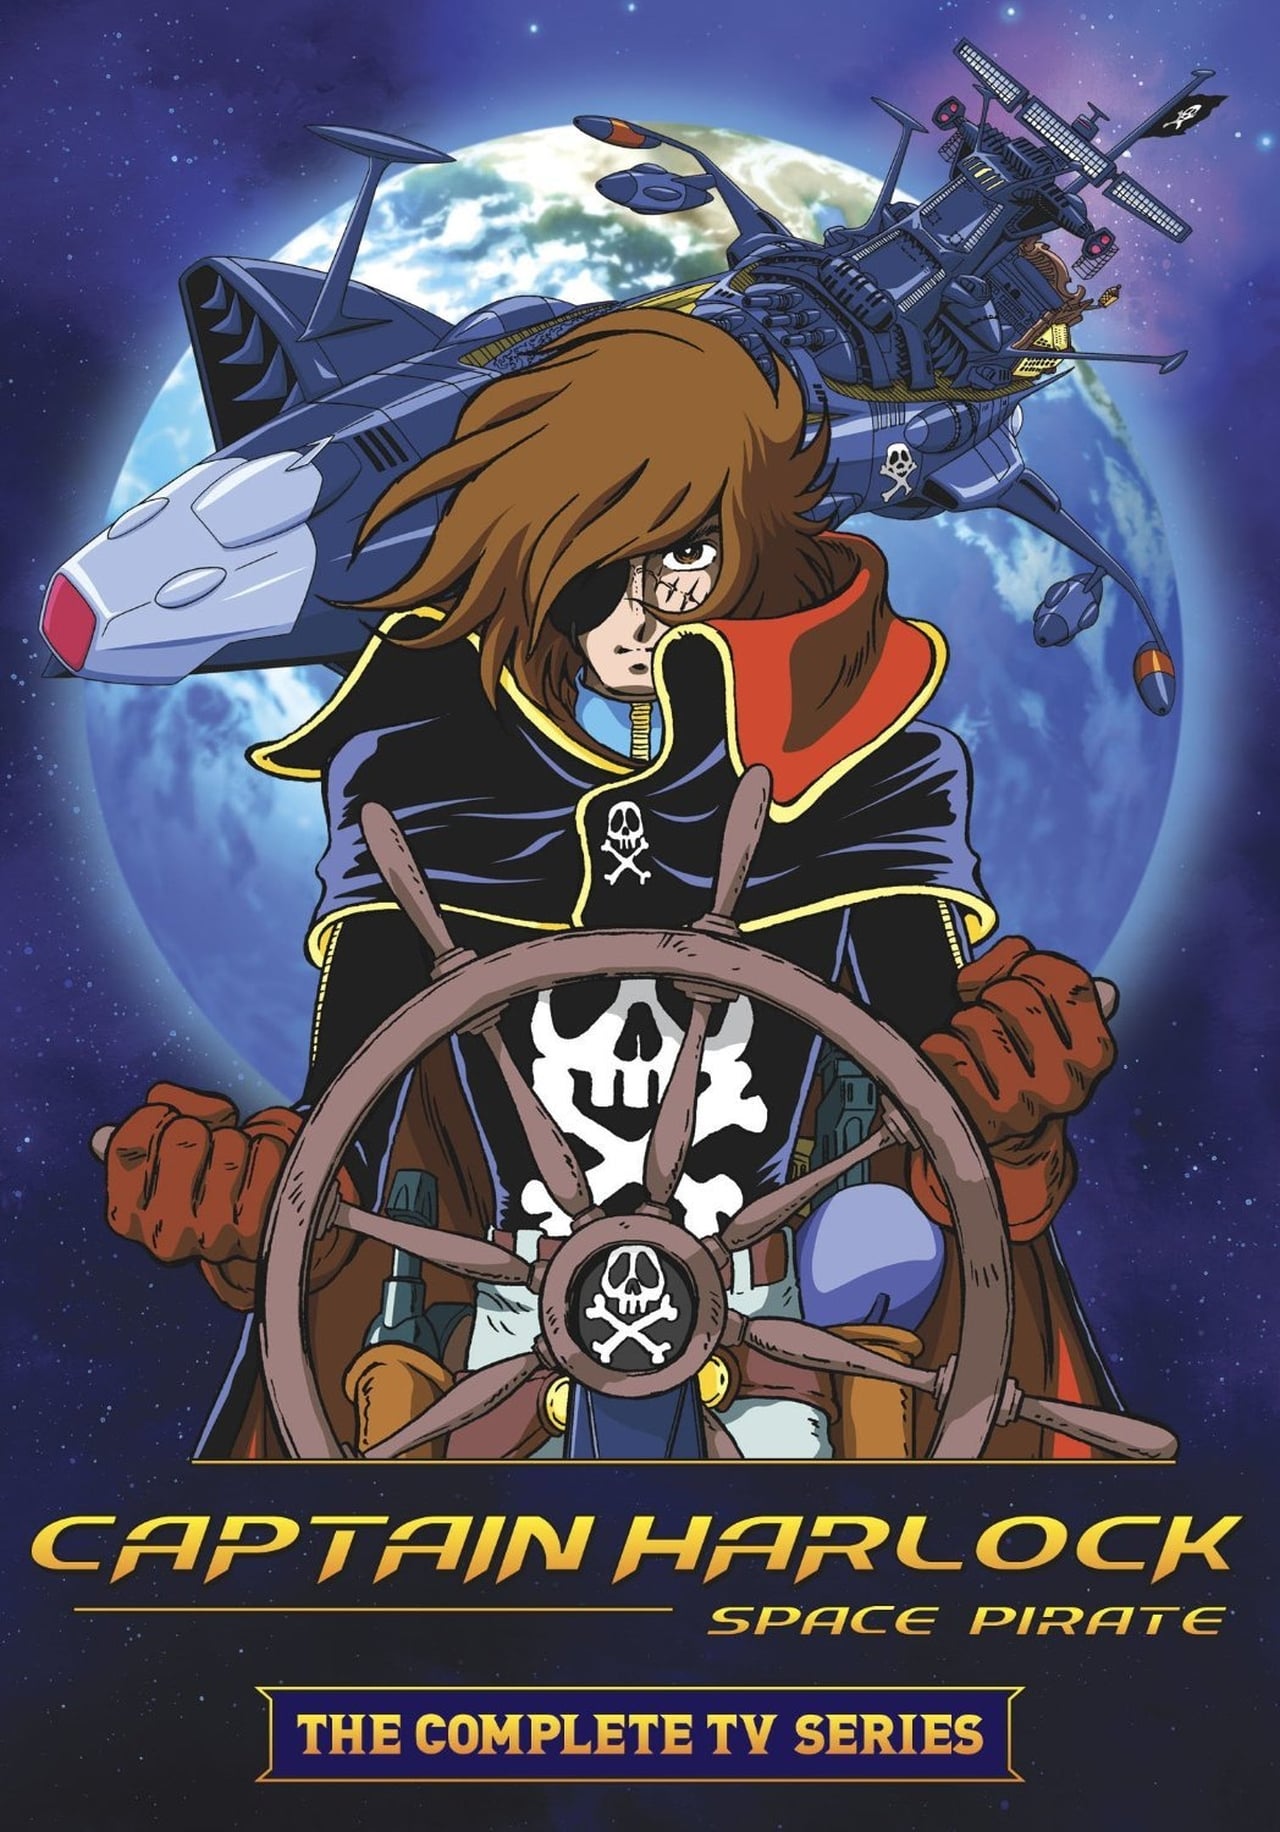 Space Pirate Captain Harlock Season 1